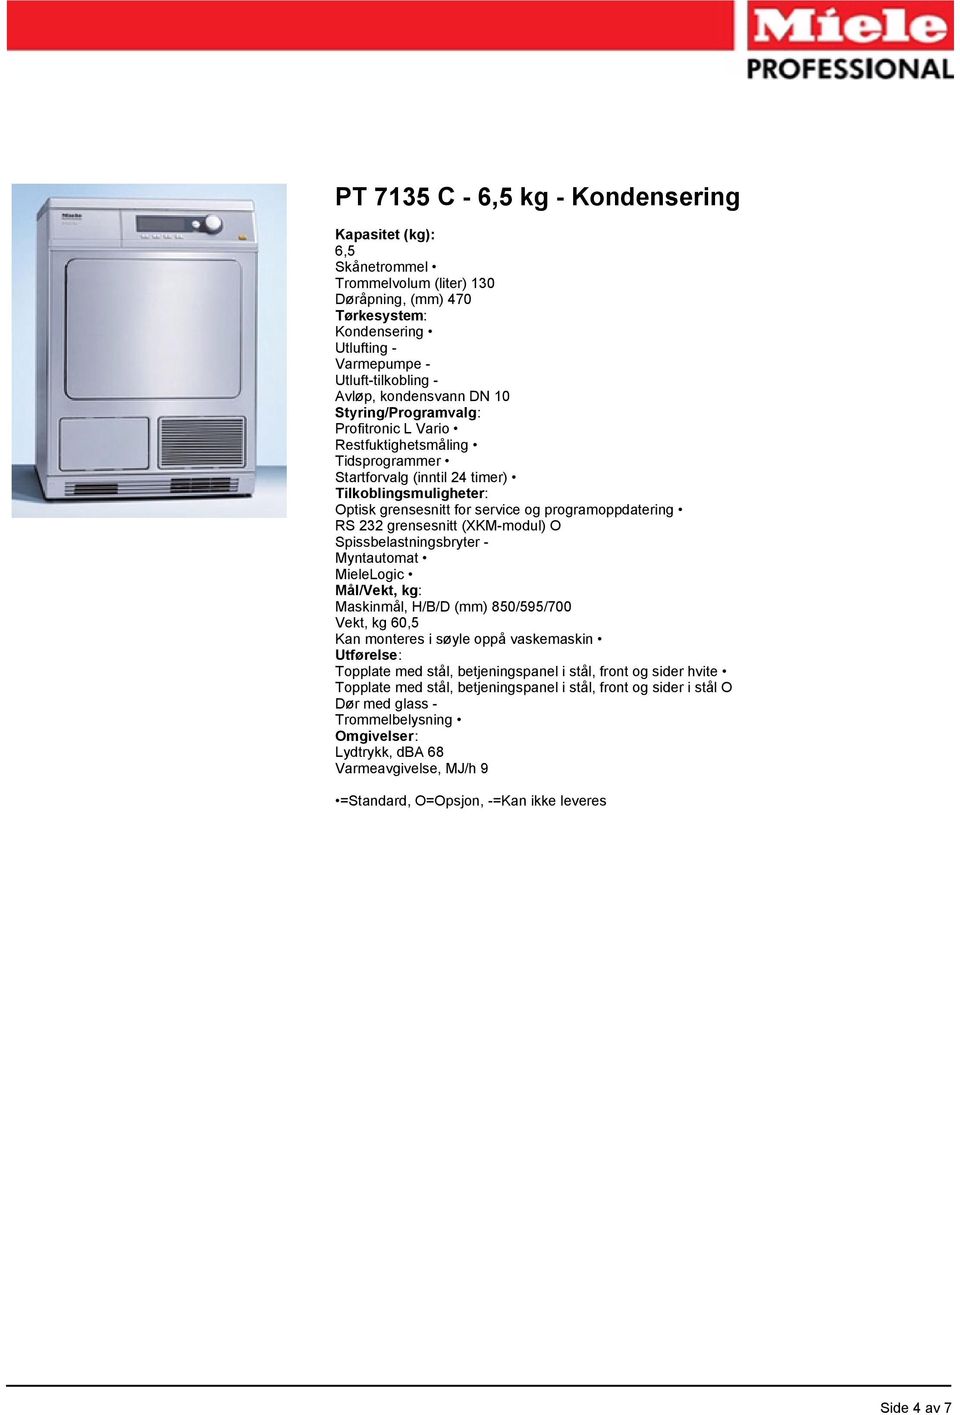 programoppdatering RS 232 grensesnitt (XKM-modul) O Spissbelastningsbryter - Myntautomat MieleLogic Mål/Vekt, kg: Maskinmål, H/B/D (mm) 850/595/700 Vekt, kg 60,5 Kan monteres i søyle oppå vaskemaskin